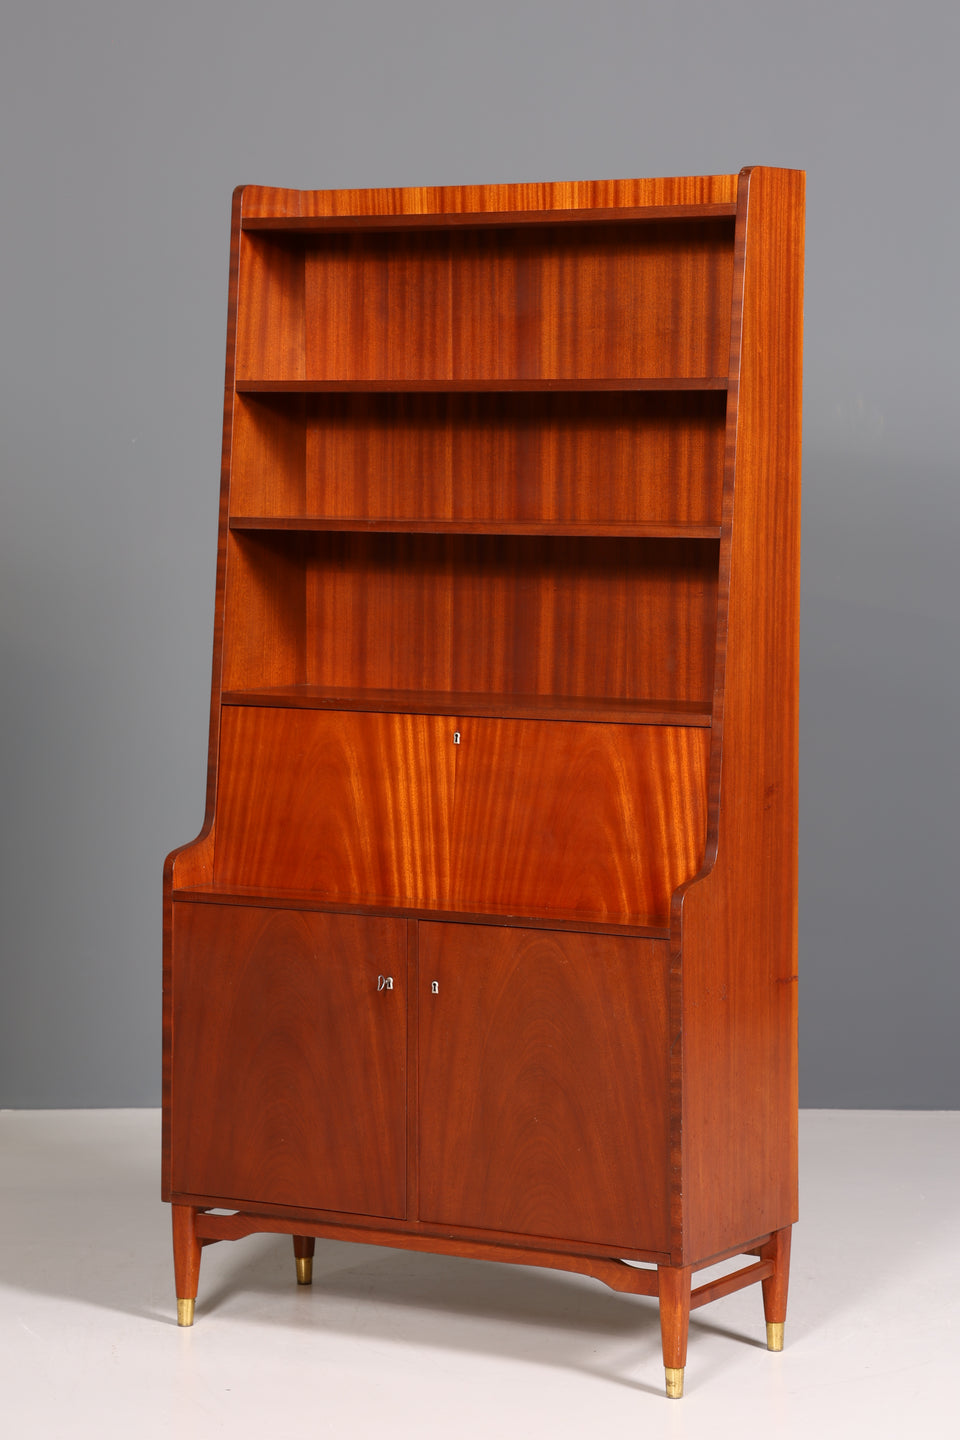 Traumhafter Mid Century Schrank Retro Sekretär Bücherregal Vintage Highboard Holz Regal 60er Jahre